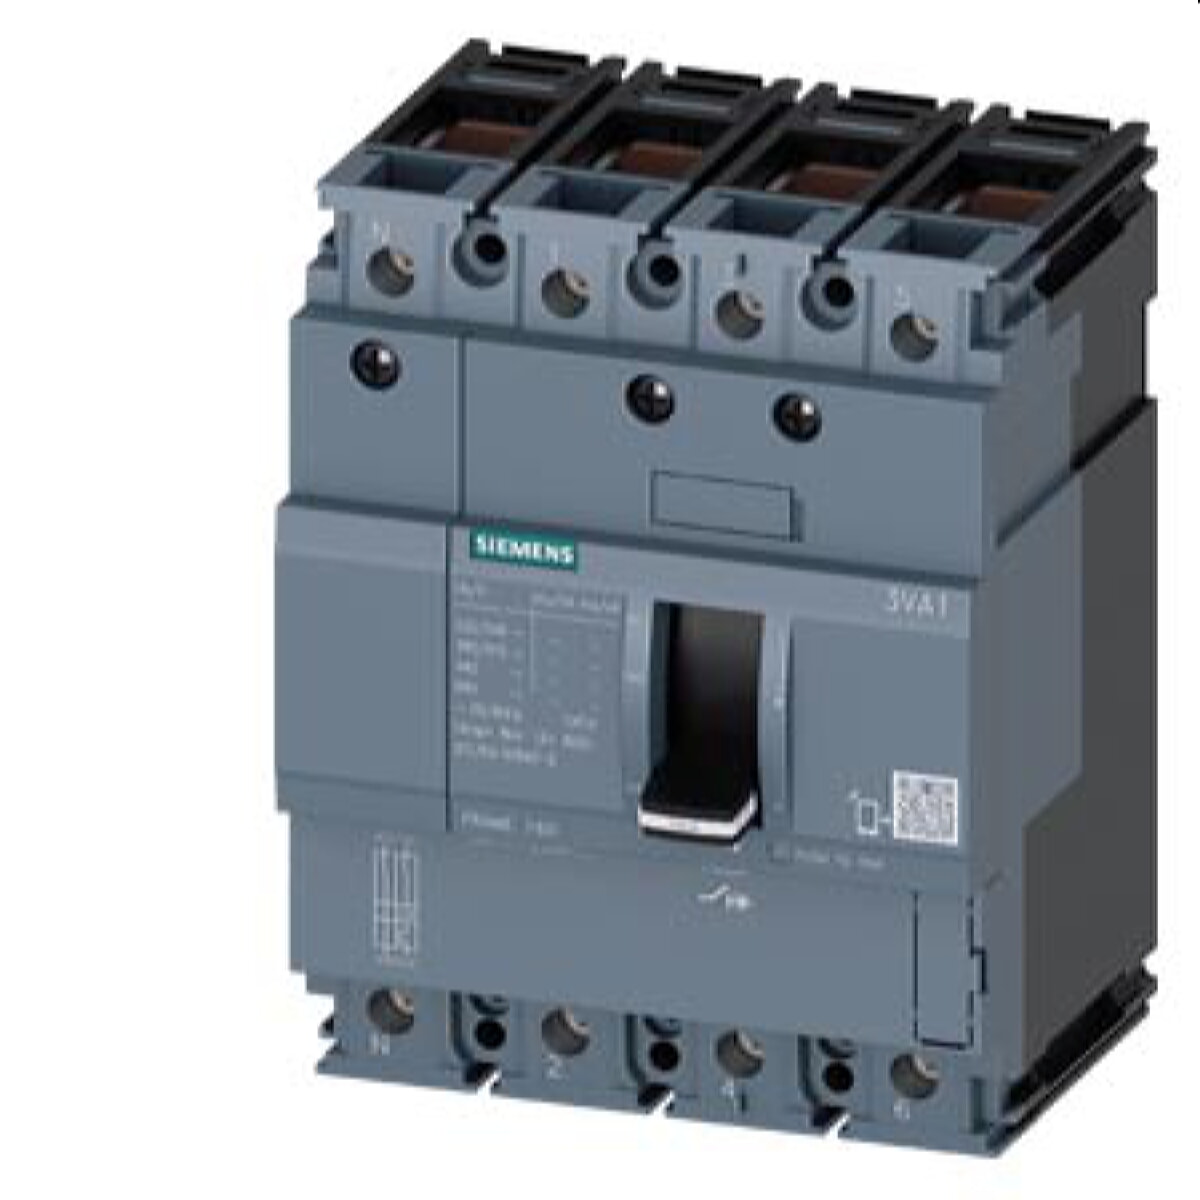 Siemens Leistungsschalter 3VA1 70kA TM210 FTFM 100A 3VA1110-6ED46-0AA0